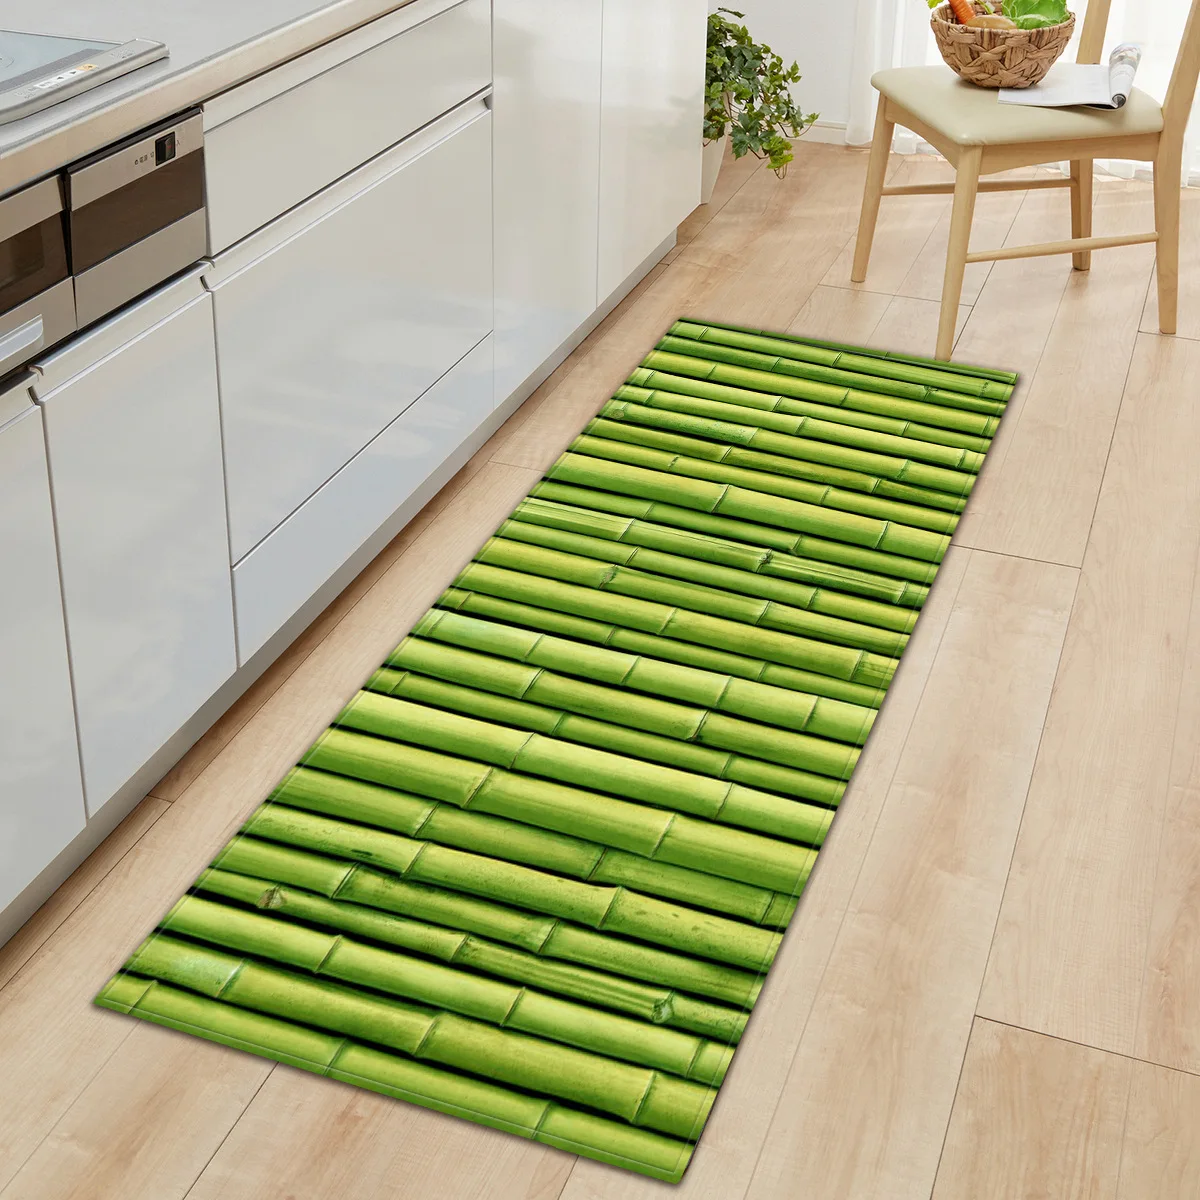 Bamboo Painting Welcome Doormat Long Floor Mats Kitchen Carpet